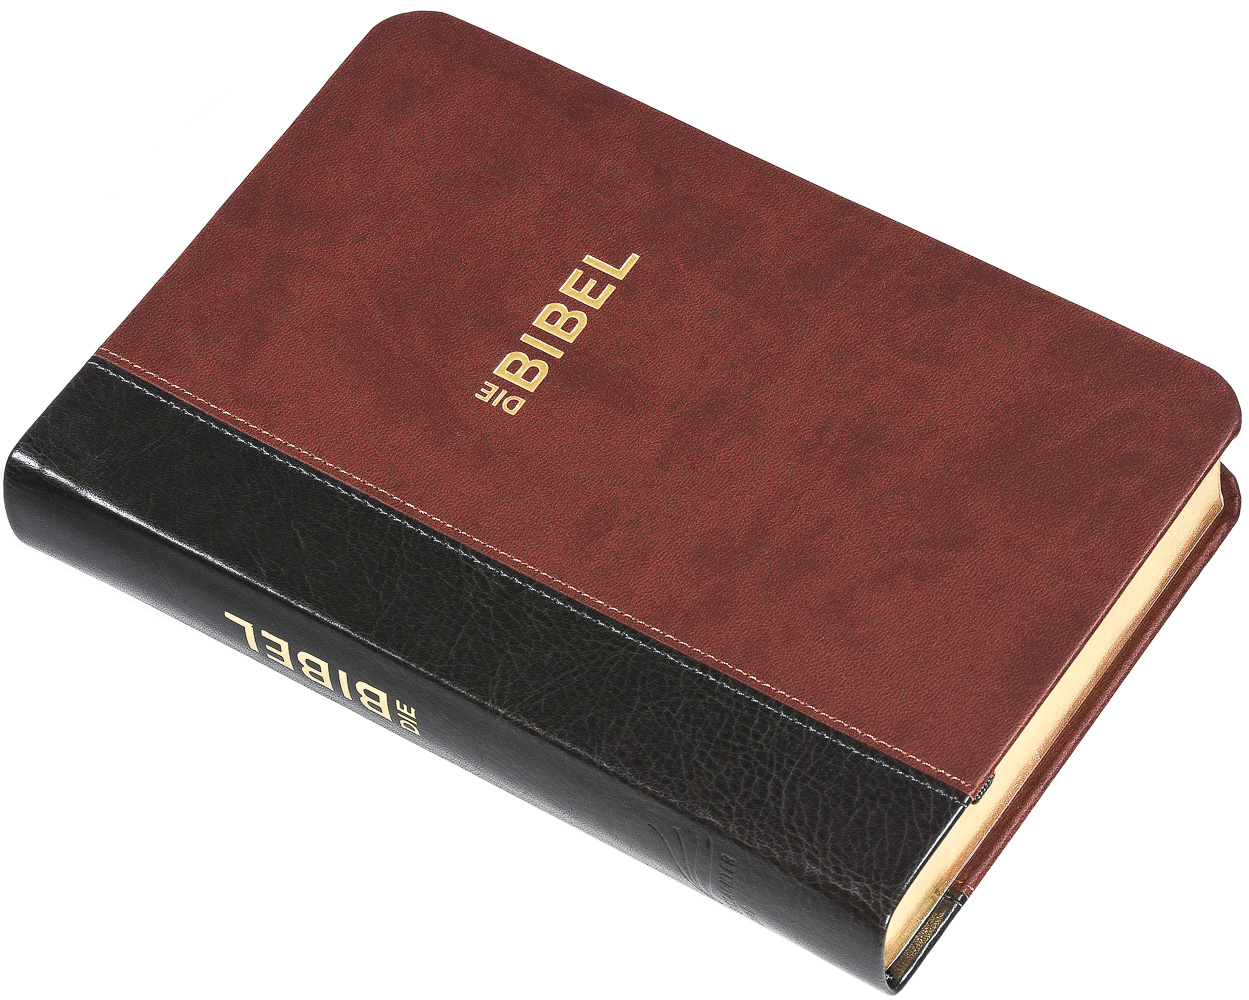 Schlachter 2000 Bibel - Taschenausgabe (Softcover, grau/braun, Goldschnitt)